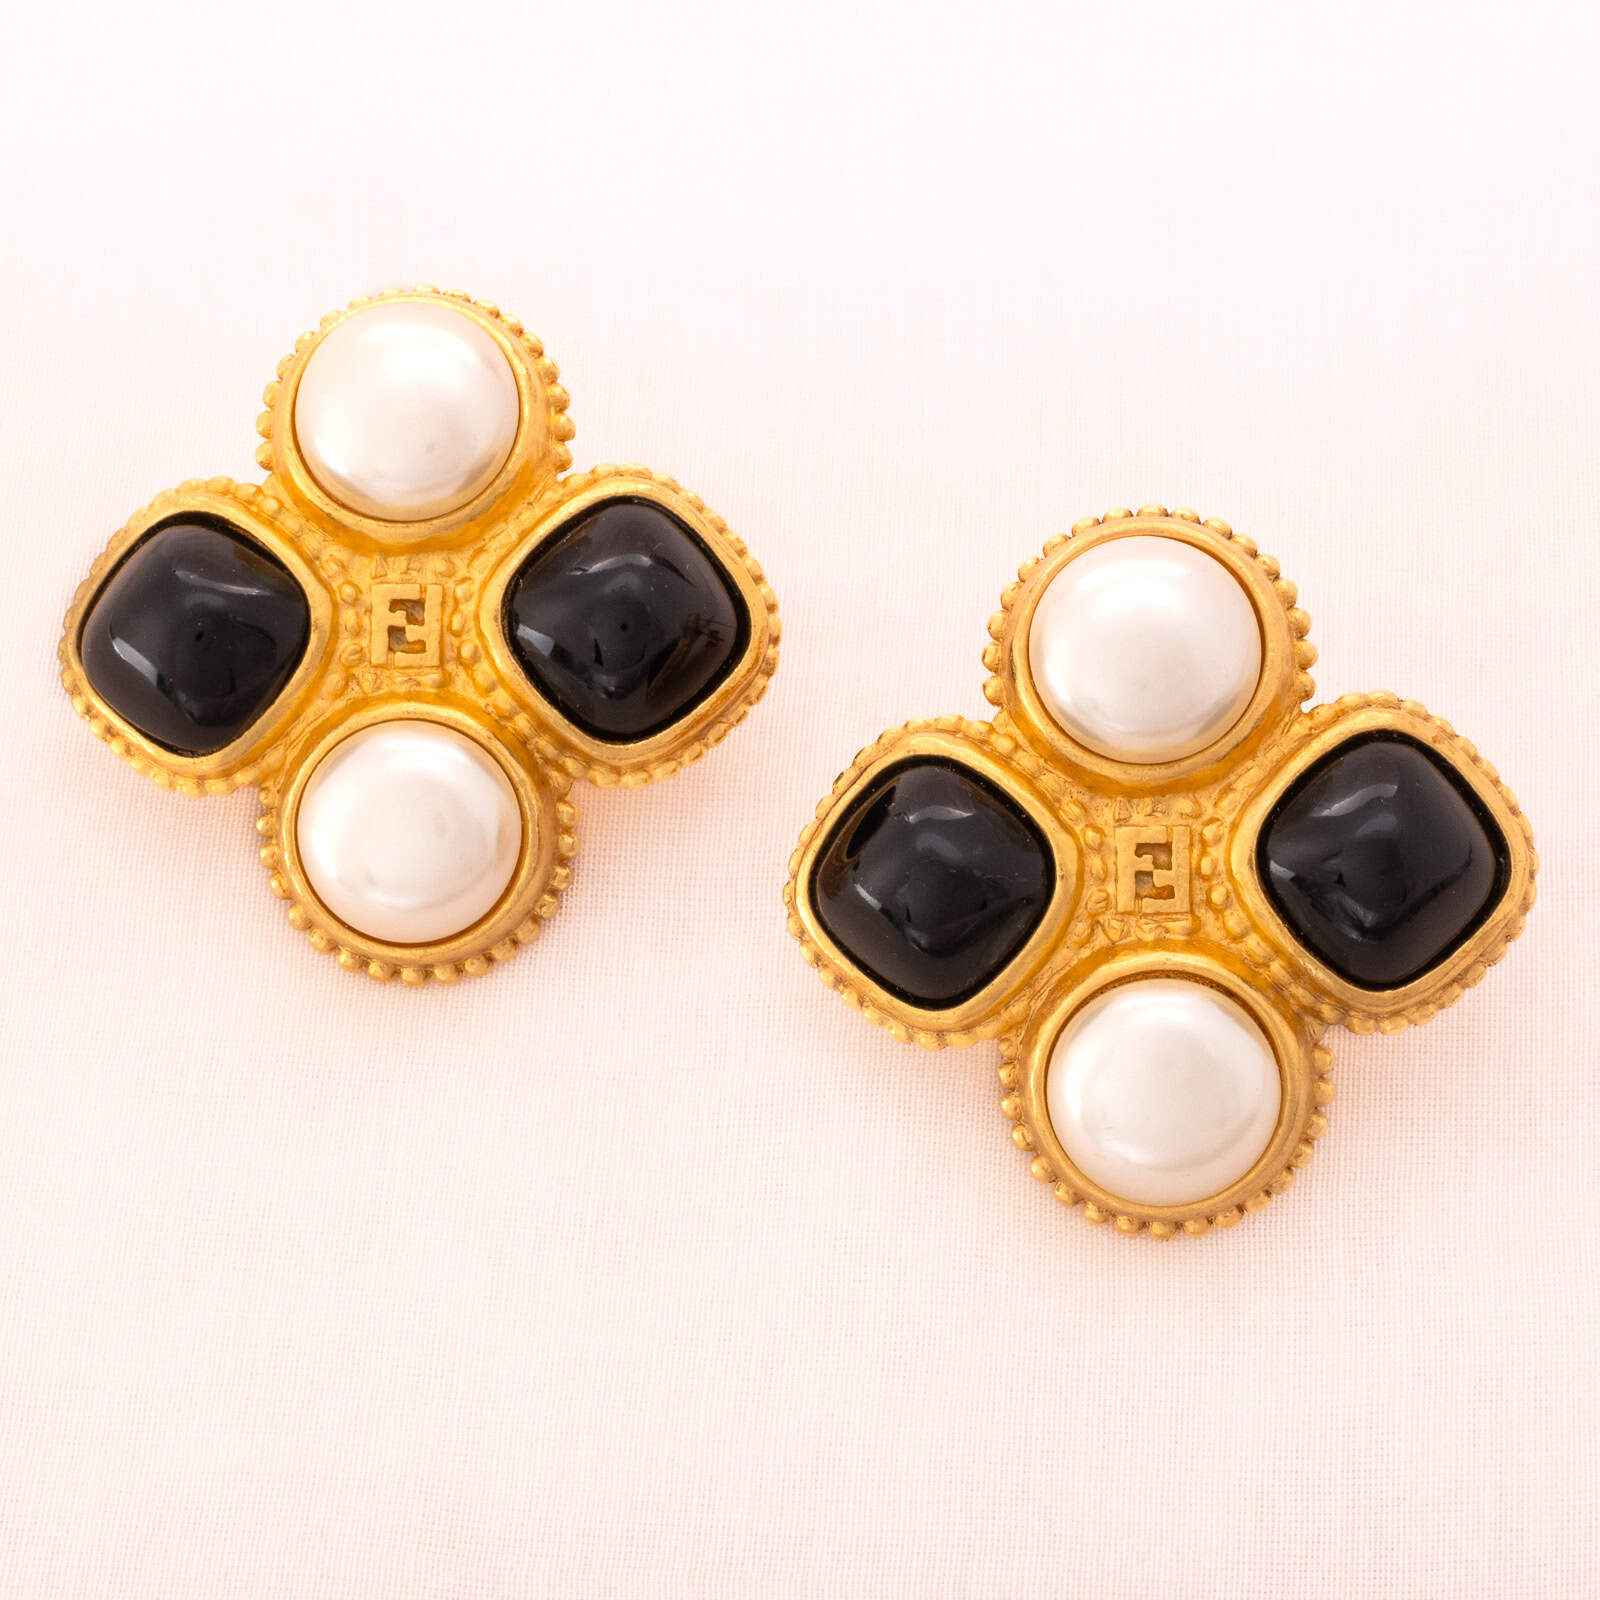 Fendi-Ohrringe-matt-vergoldet-Perlen-schwarze-Cabochons